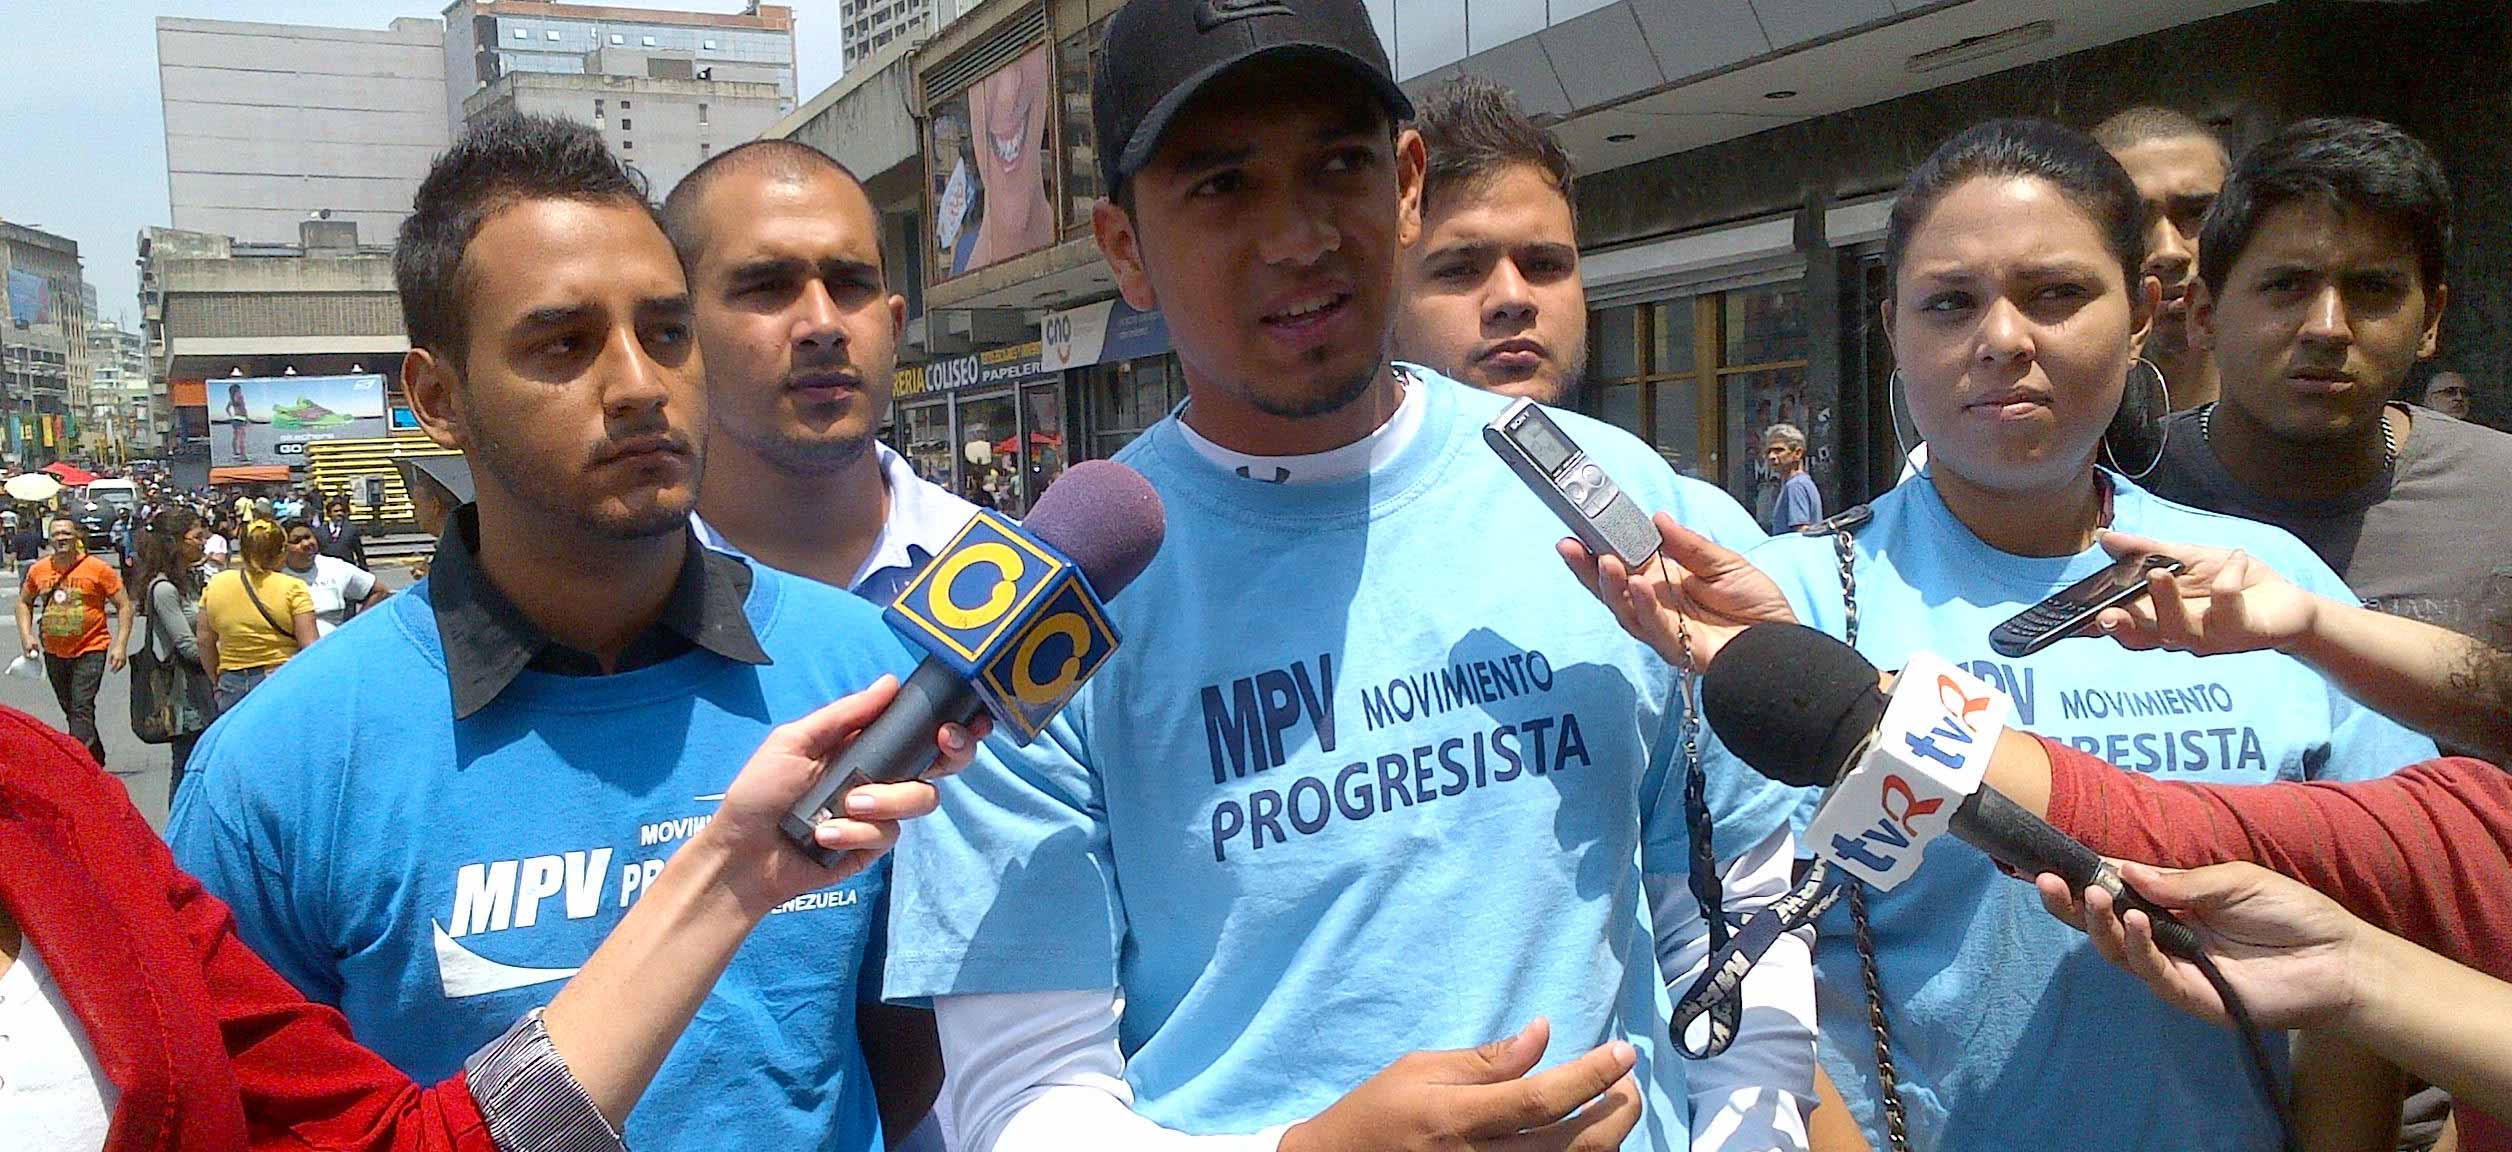 “Yo sí voto por Capriles” es el lema de jóvenes del Movimiento Progresista